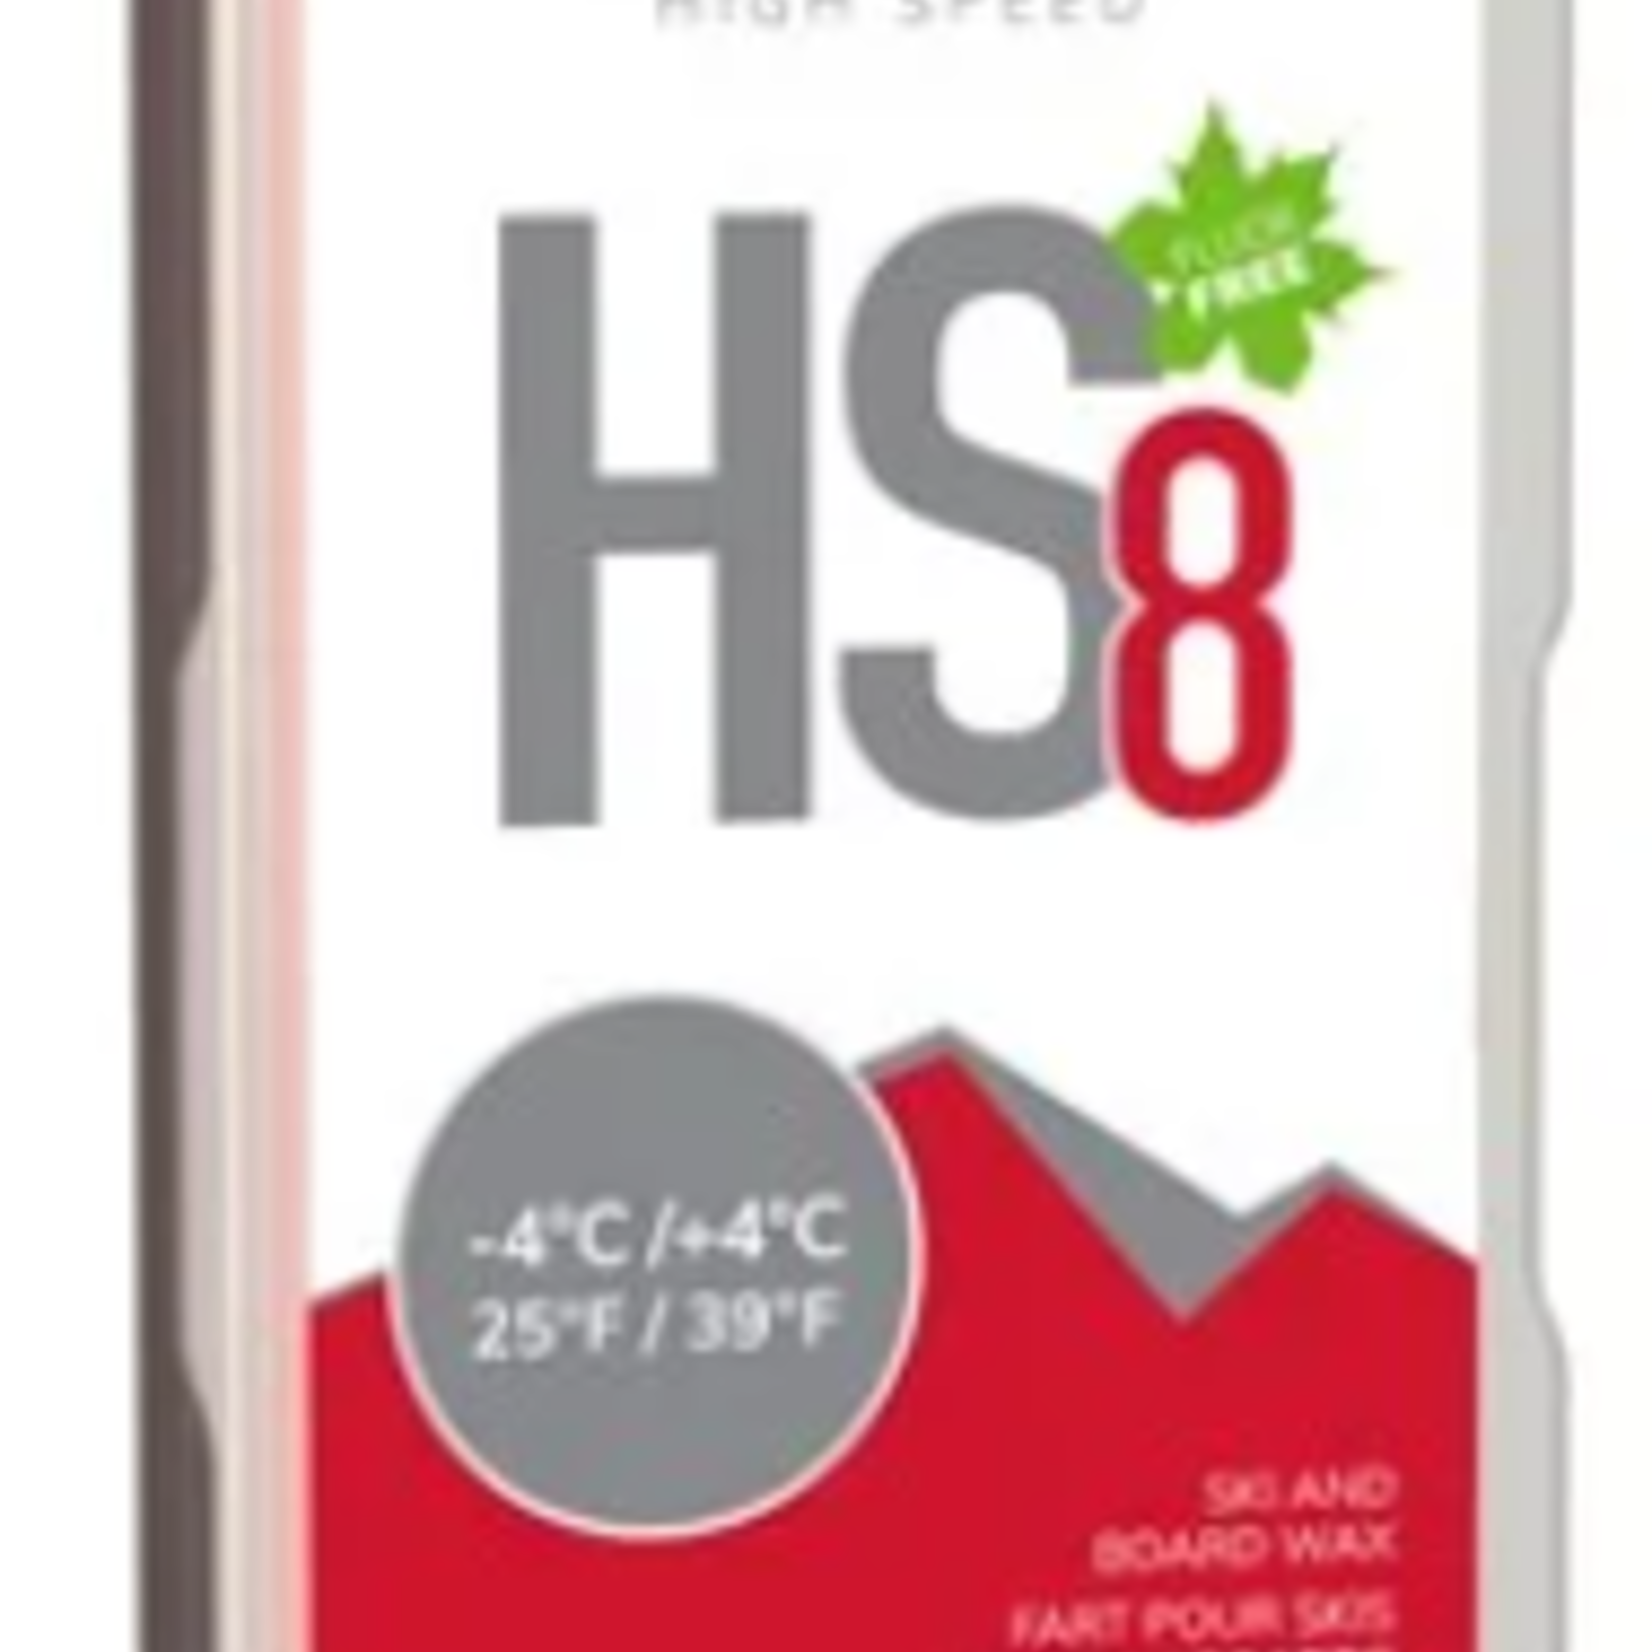 SWIX HS8 Red, -4?¯C/+4?¯C, 180g